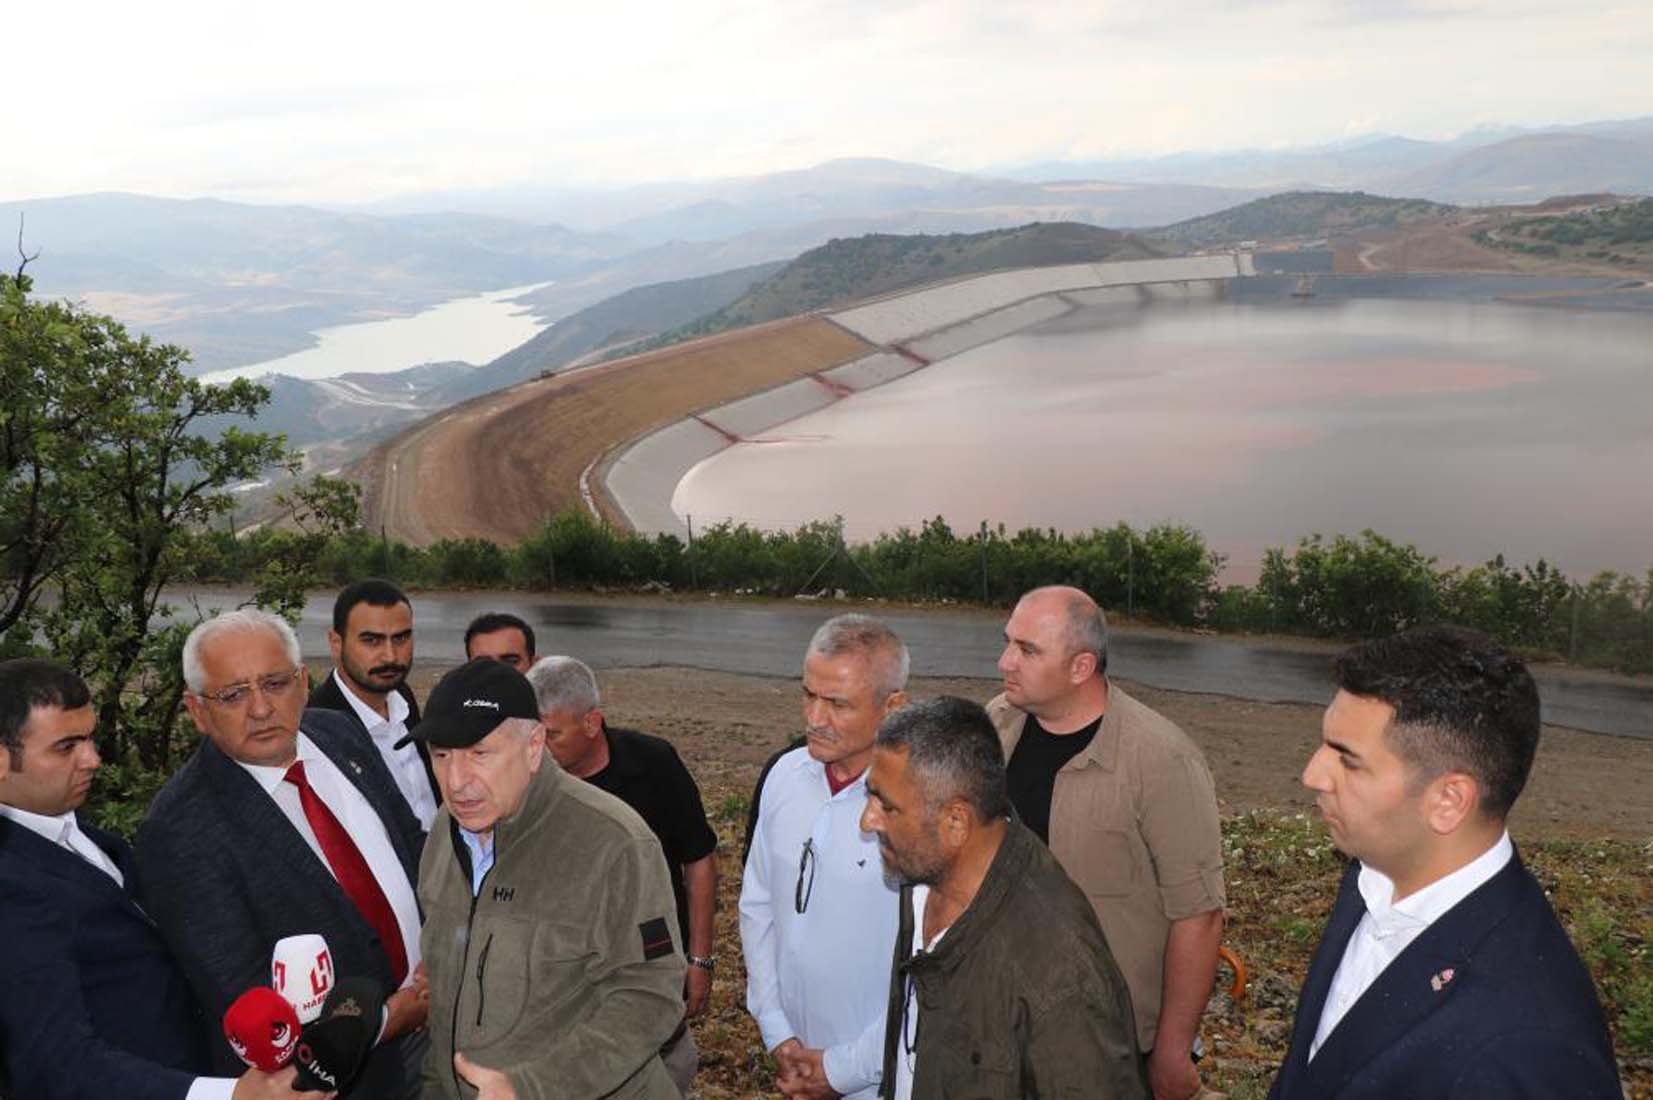 Erzincan İliç'te siyanür krizinde sıcak gelişme! Madene “en üst sınırdan” ceza kesildi